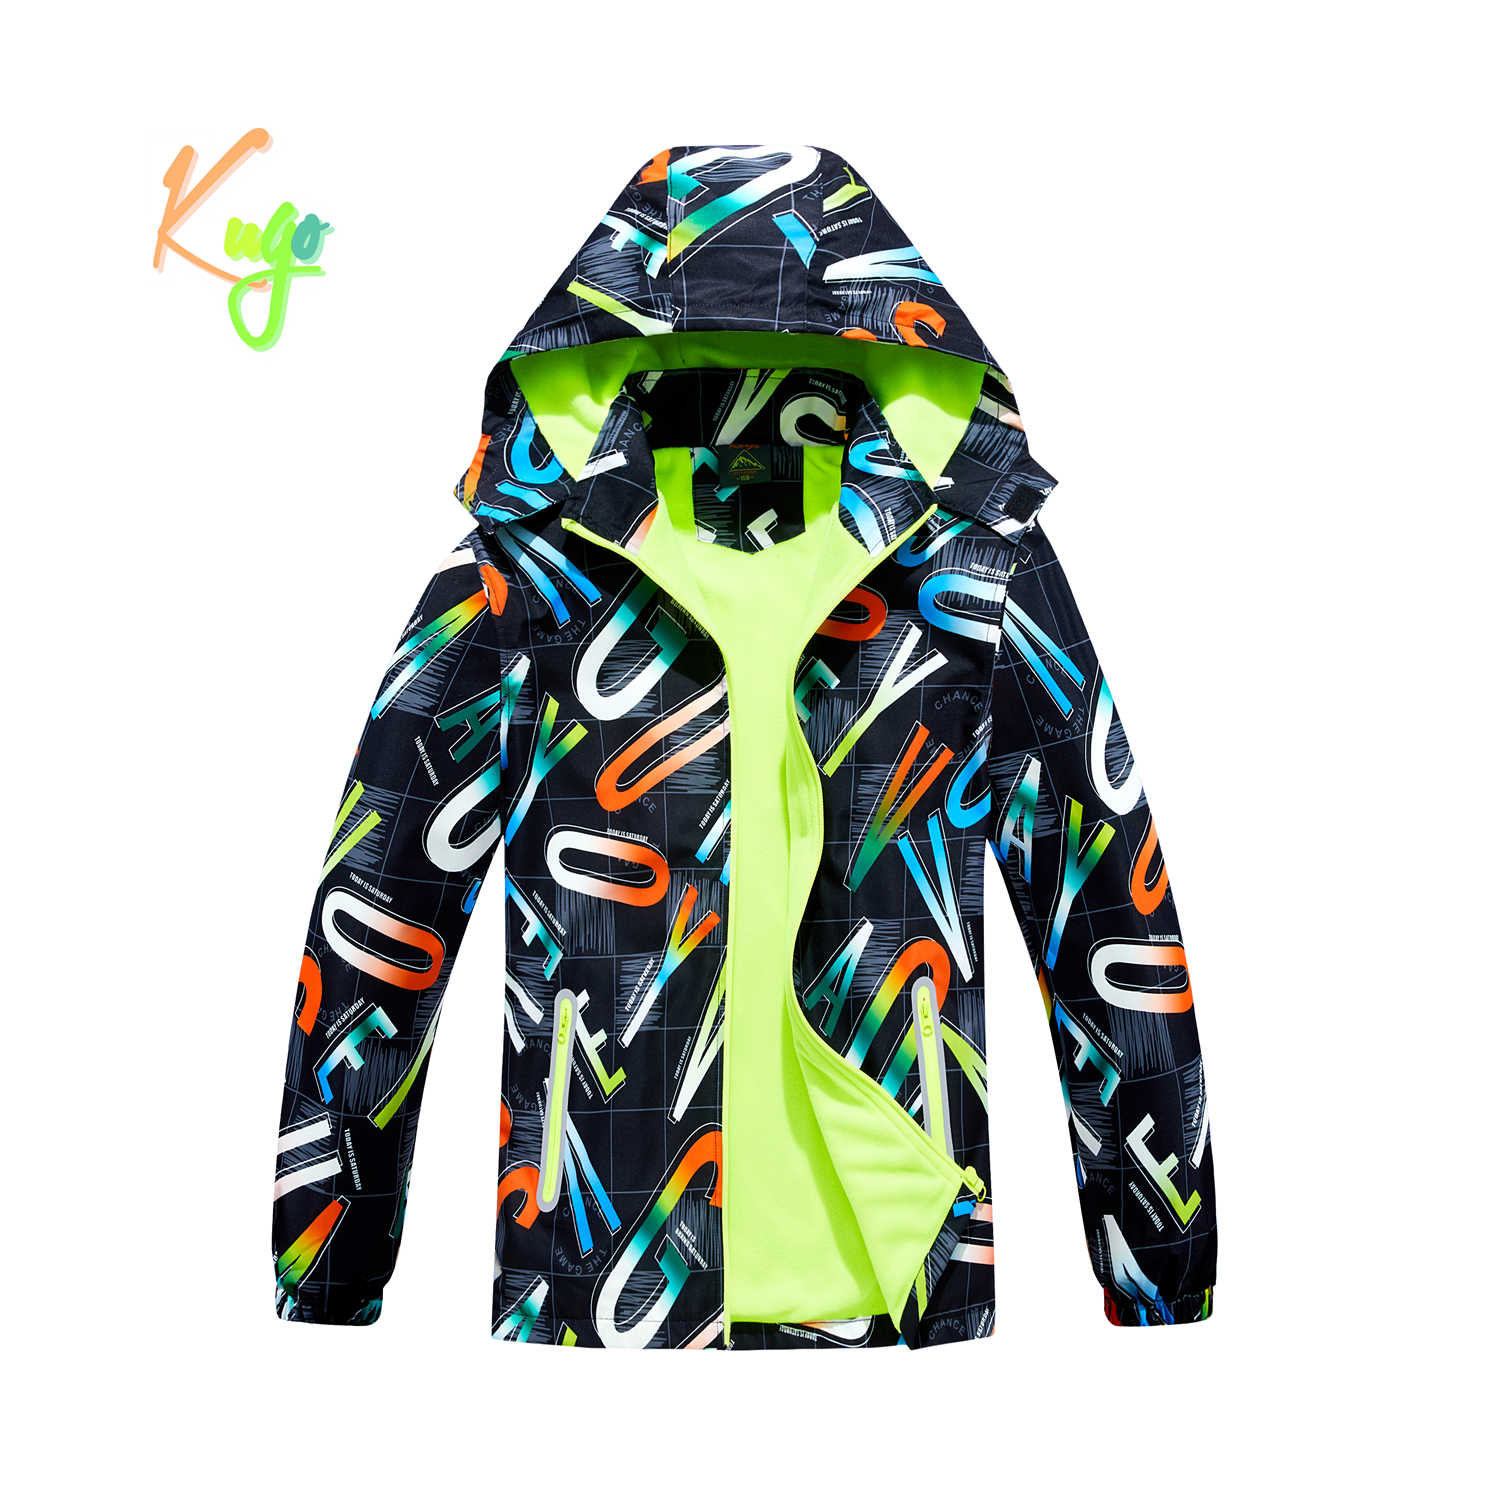 Chlapecká podzimní bunda, zateplená - KUGO B2859, černá, písmena Barva: Černá, Velikost: 146